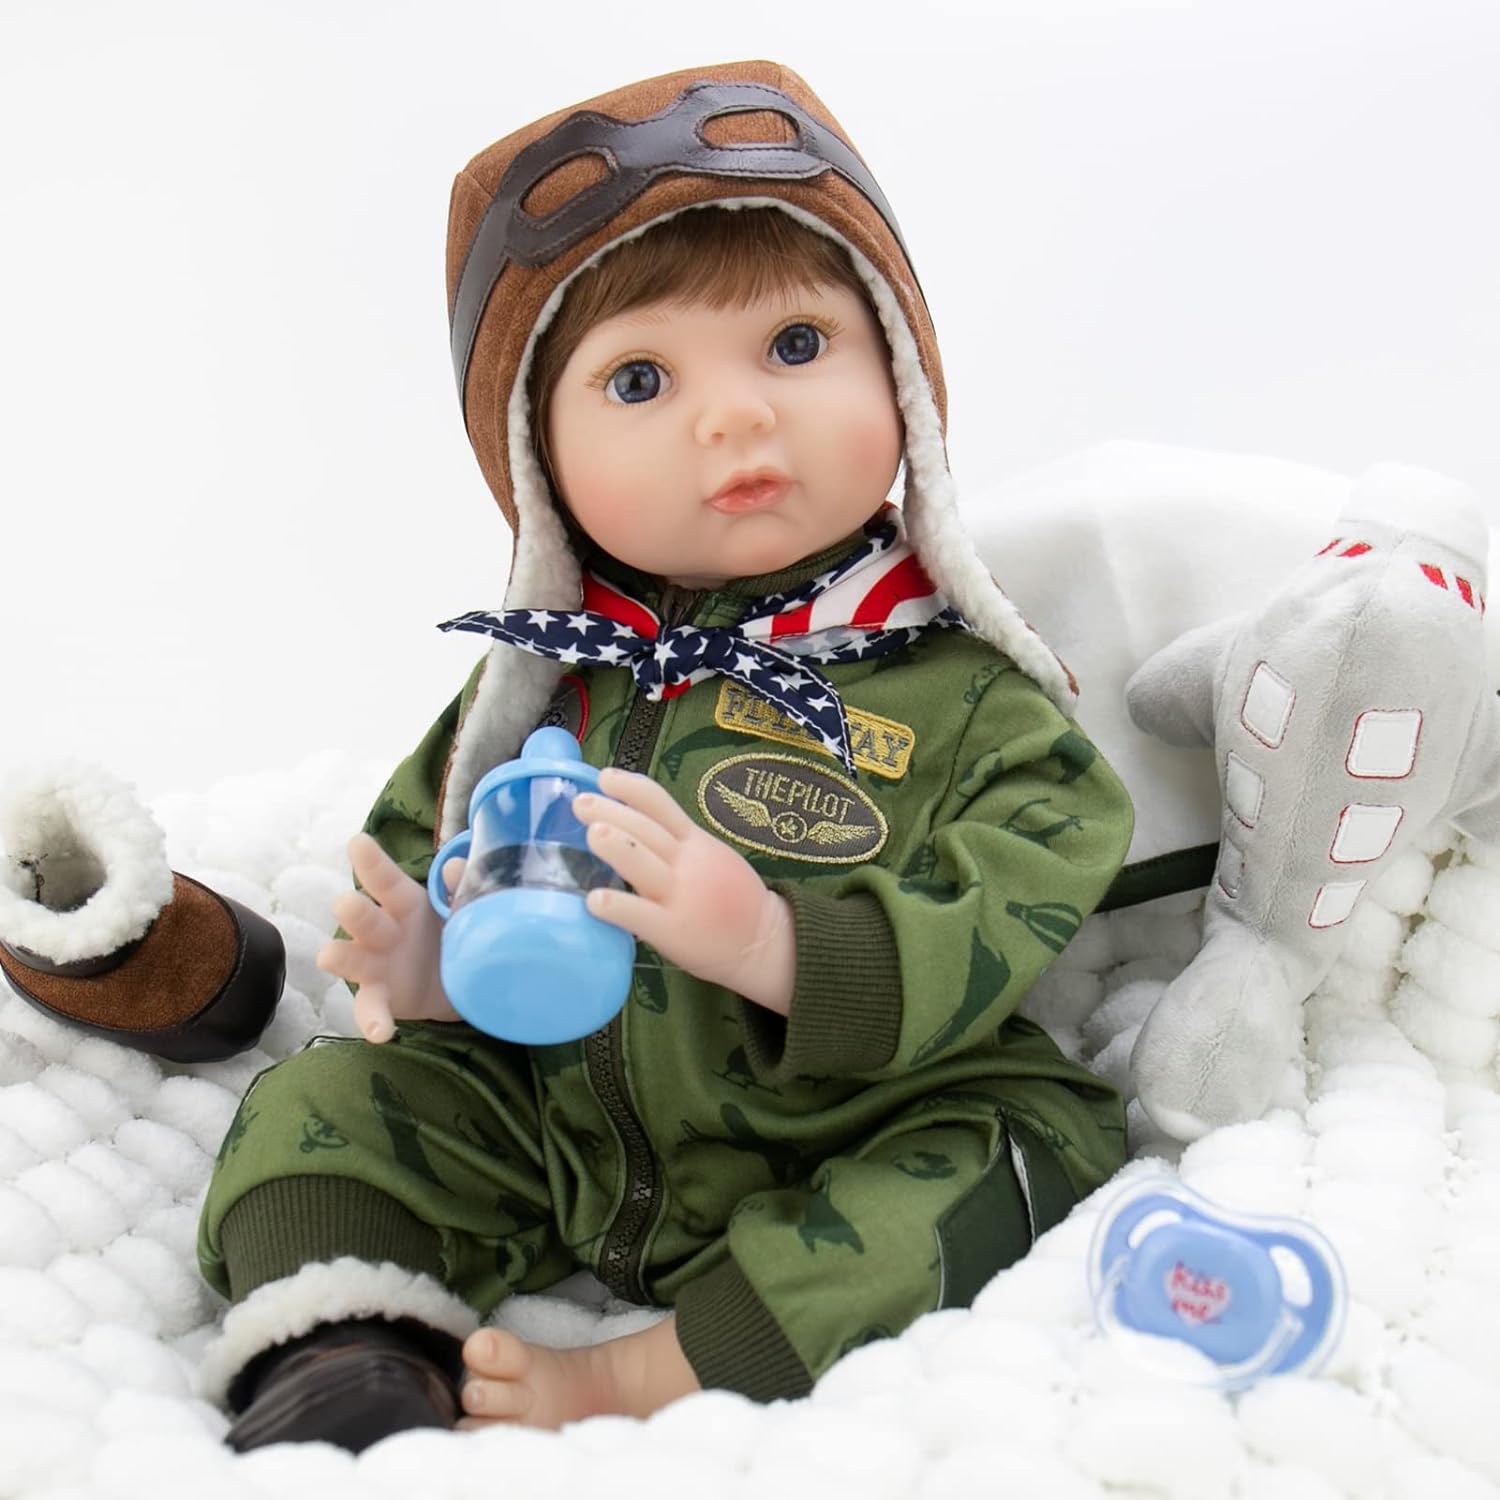 Cute Cartoon Feeding Bottle Baby Doll Supplies For Newborn Reborn Doll Toy